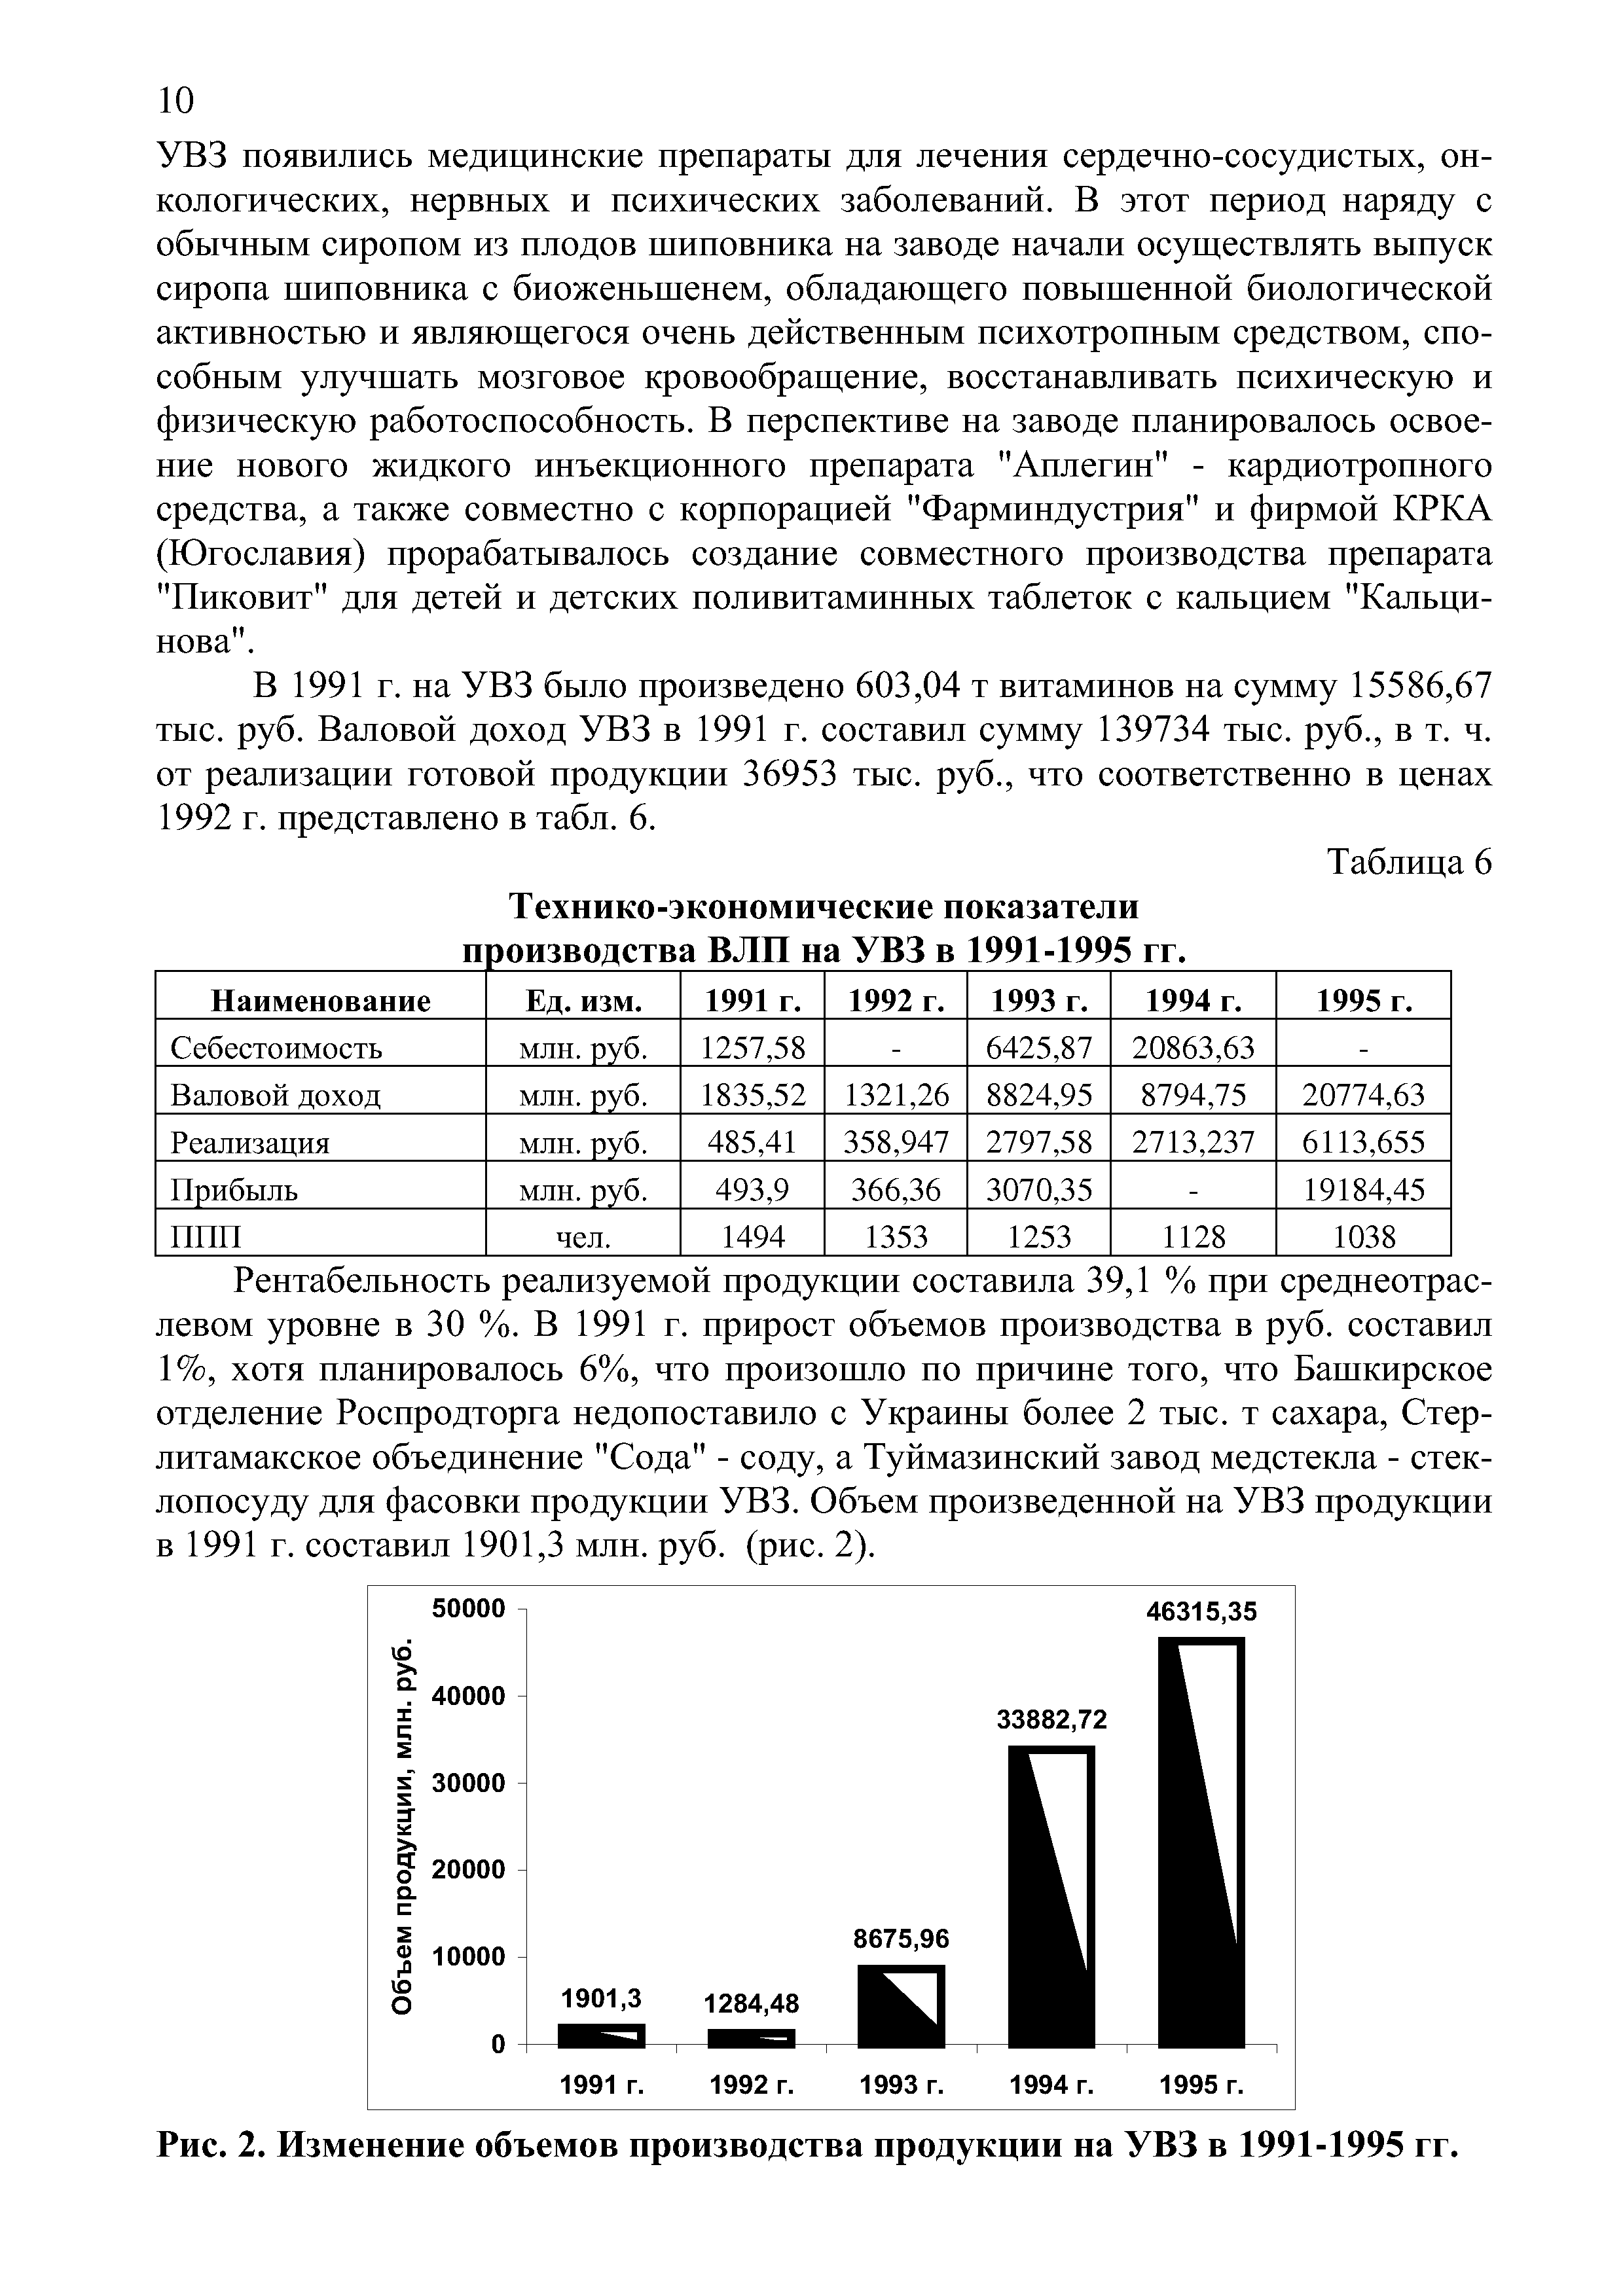 Рис. 2. Изменение объемов производства продукции на УВЗ в 1991-1995 гг.
